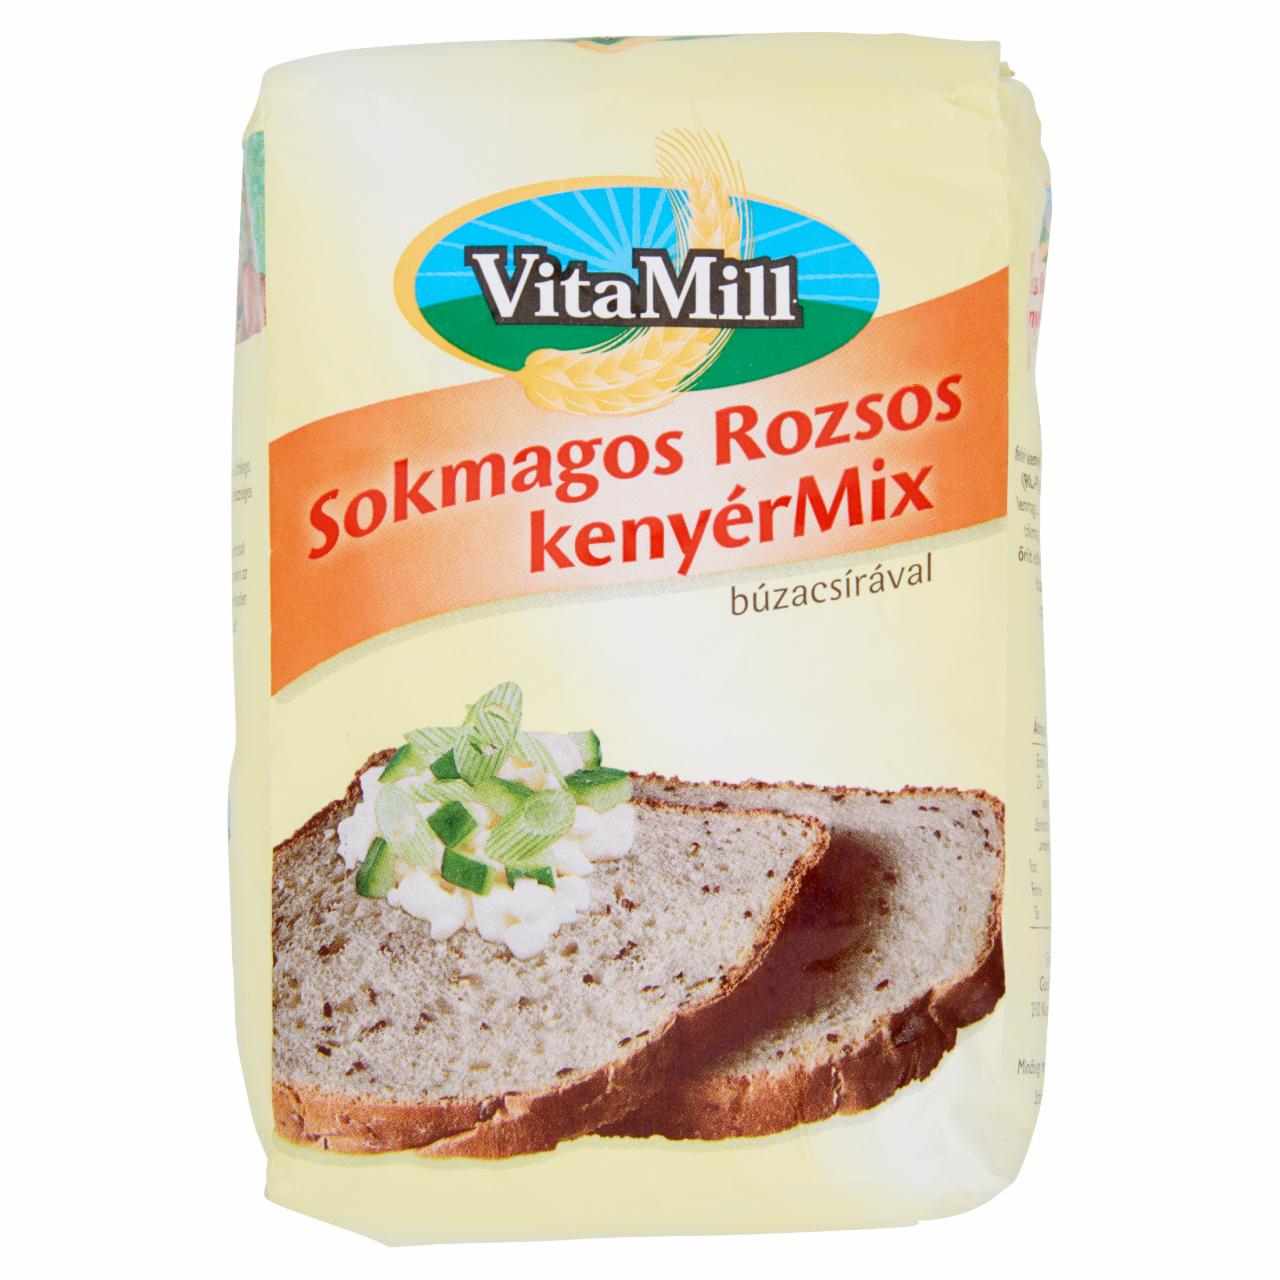 Képek - VitaMill sokmagos rozsos kenyérMix búzacsírával 1 kg